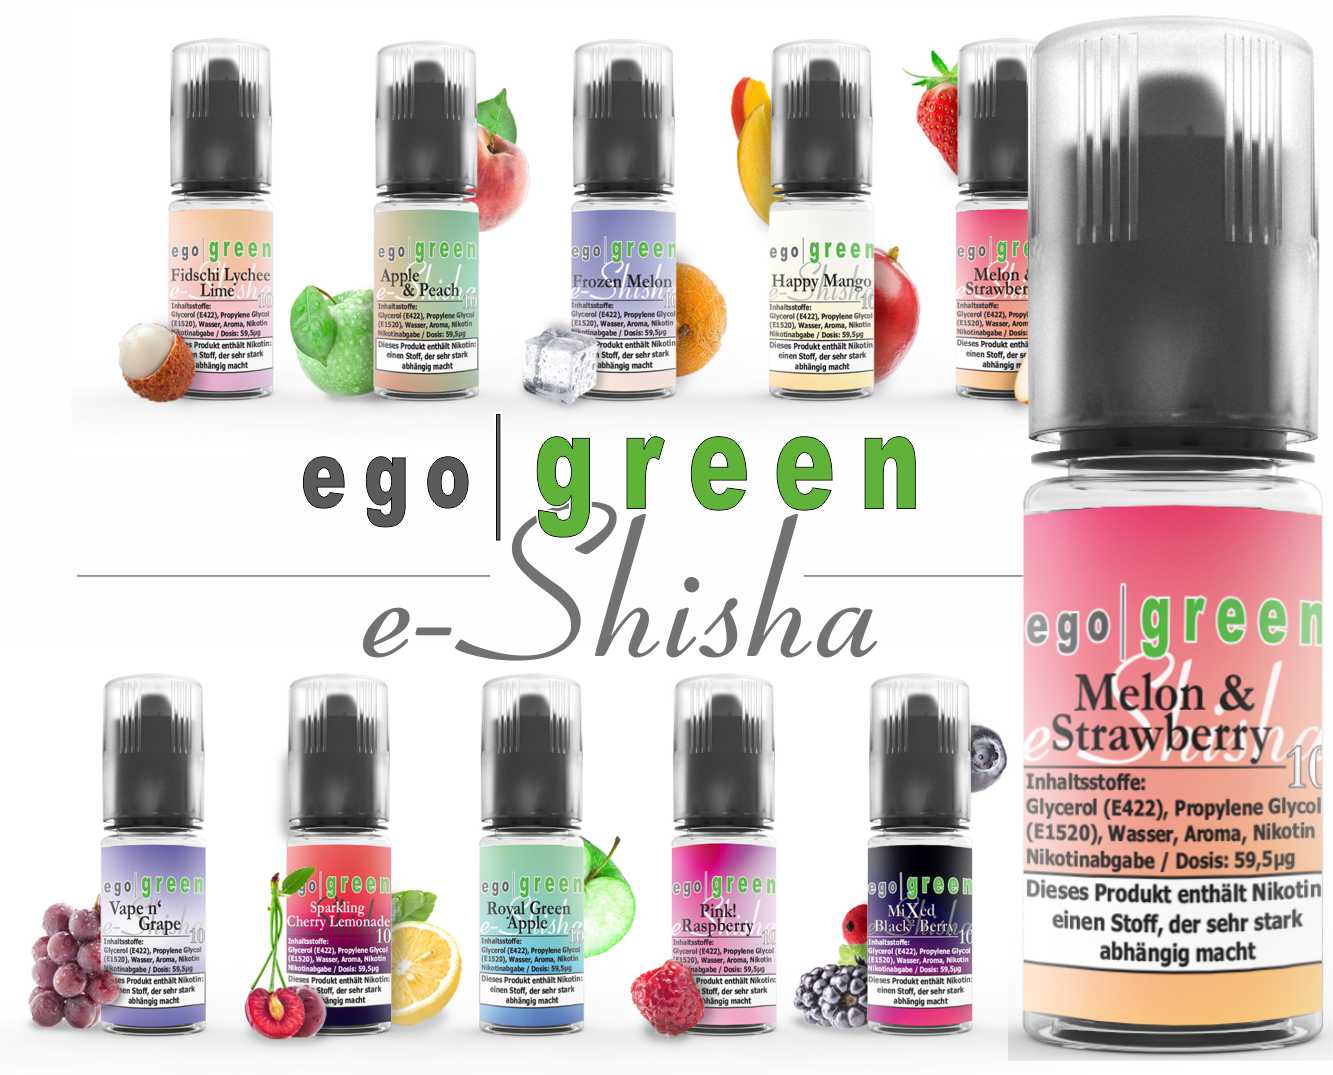 egogreen Melon & Strawberry Nikotinsalz e-Shisha Liquid kaufen